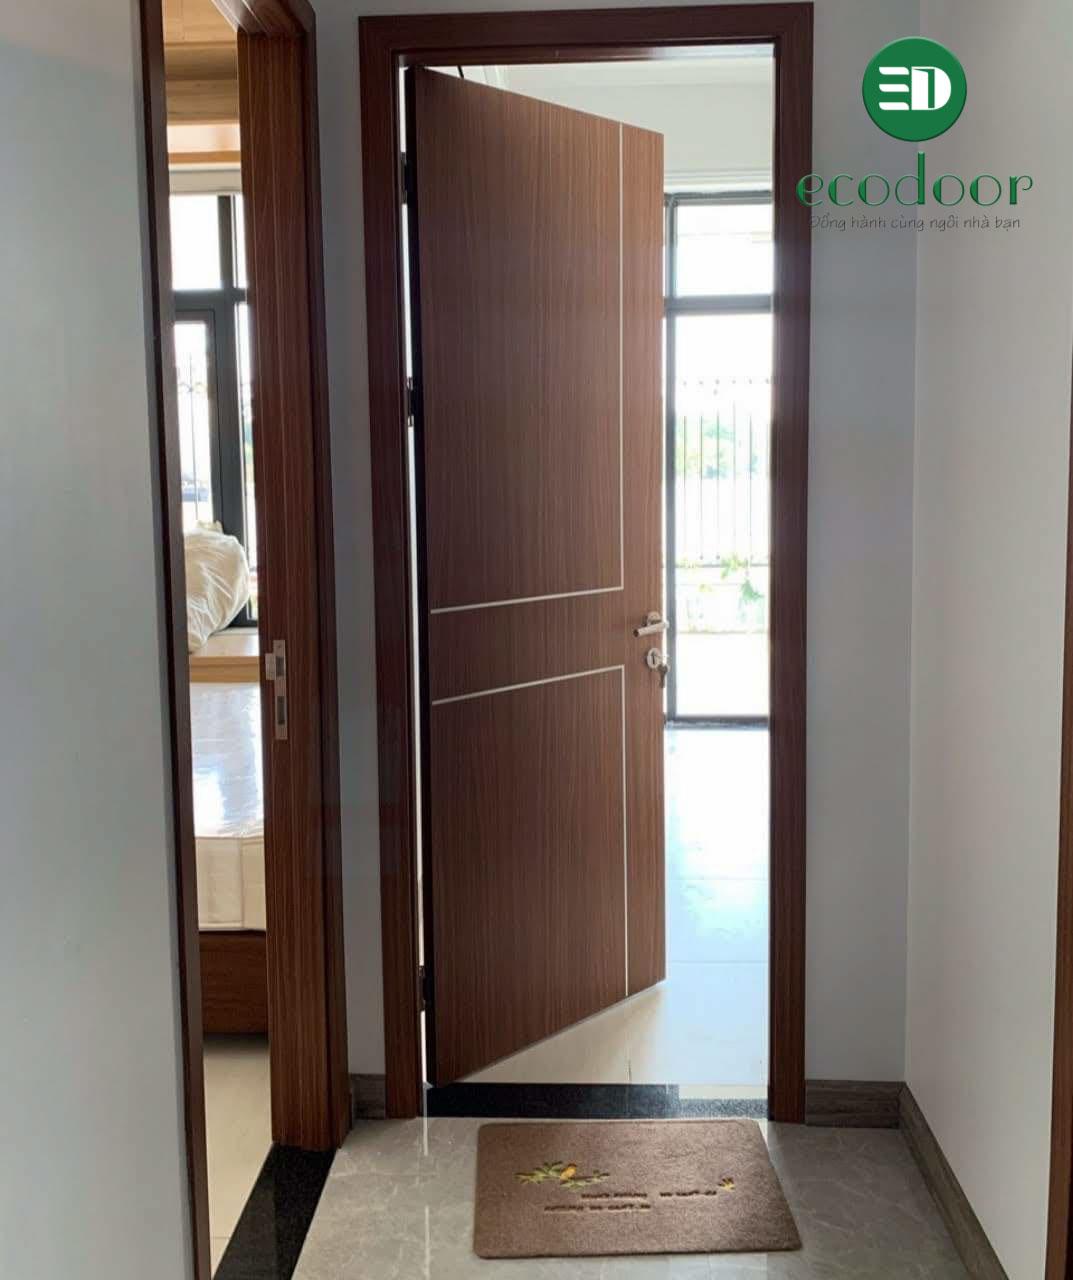 Lắp đặt cửa gỗ nhựa composite Ecodoor cho biệt thự tại Bắc Giang